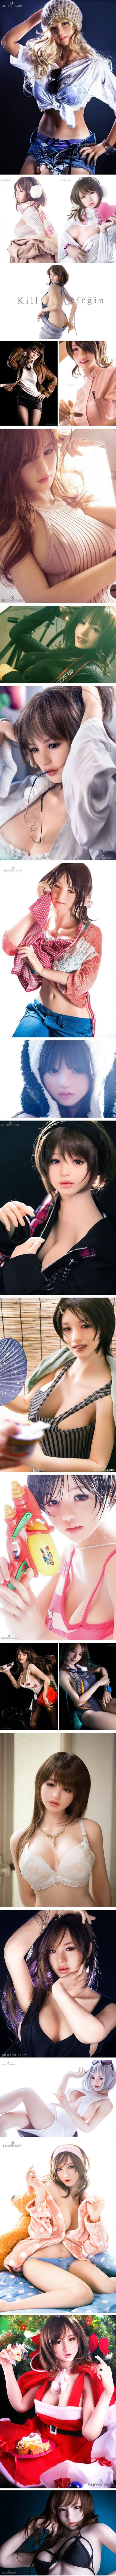 Japanci proizveli lutke za seks koje izgledaju poput pravih žena